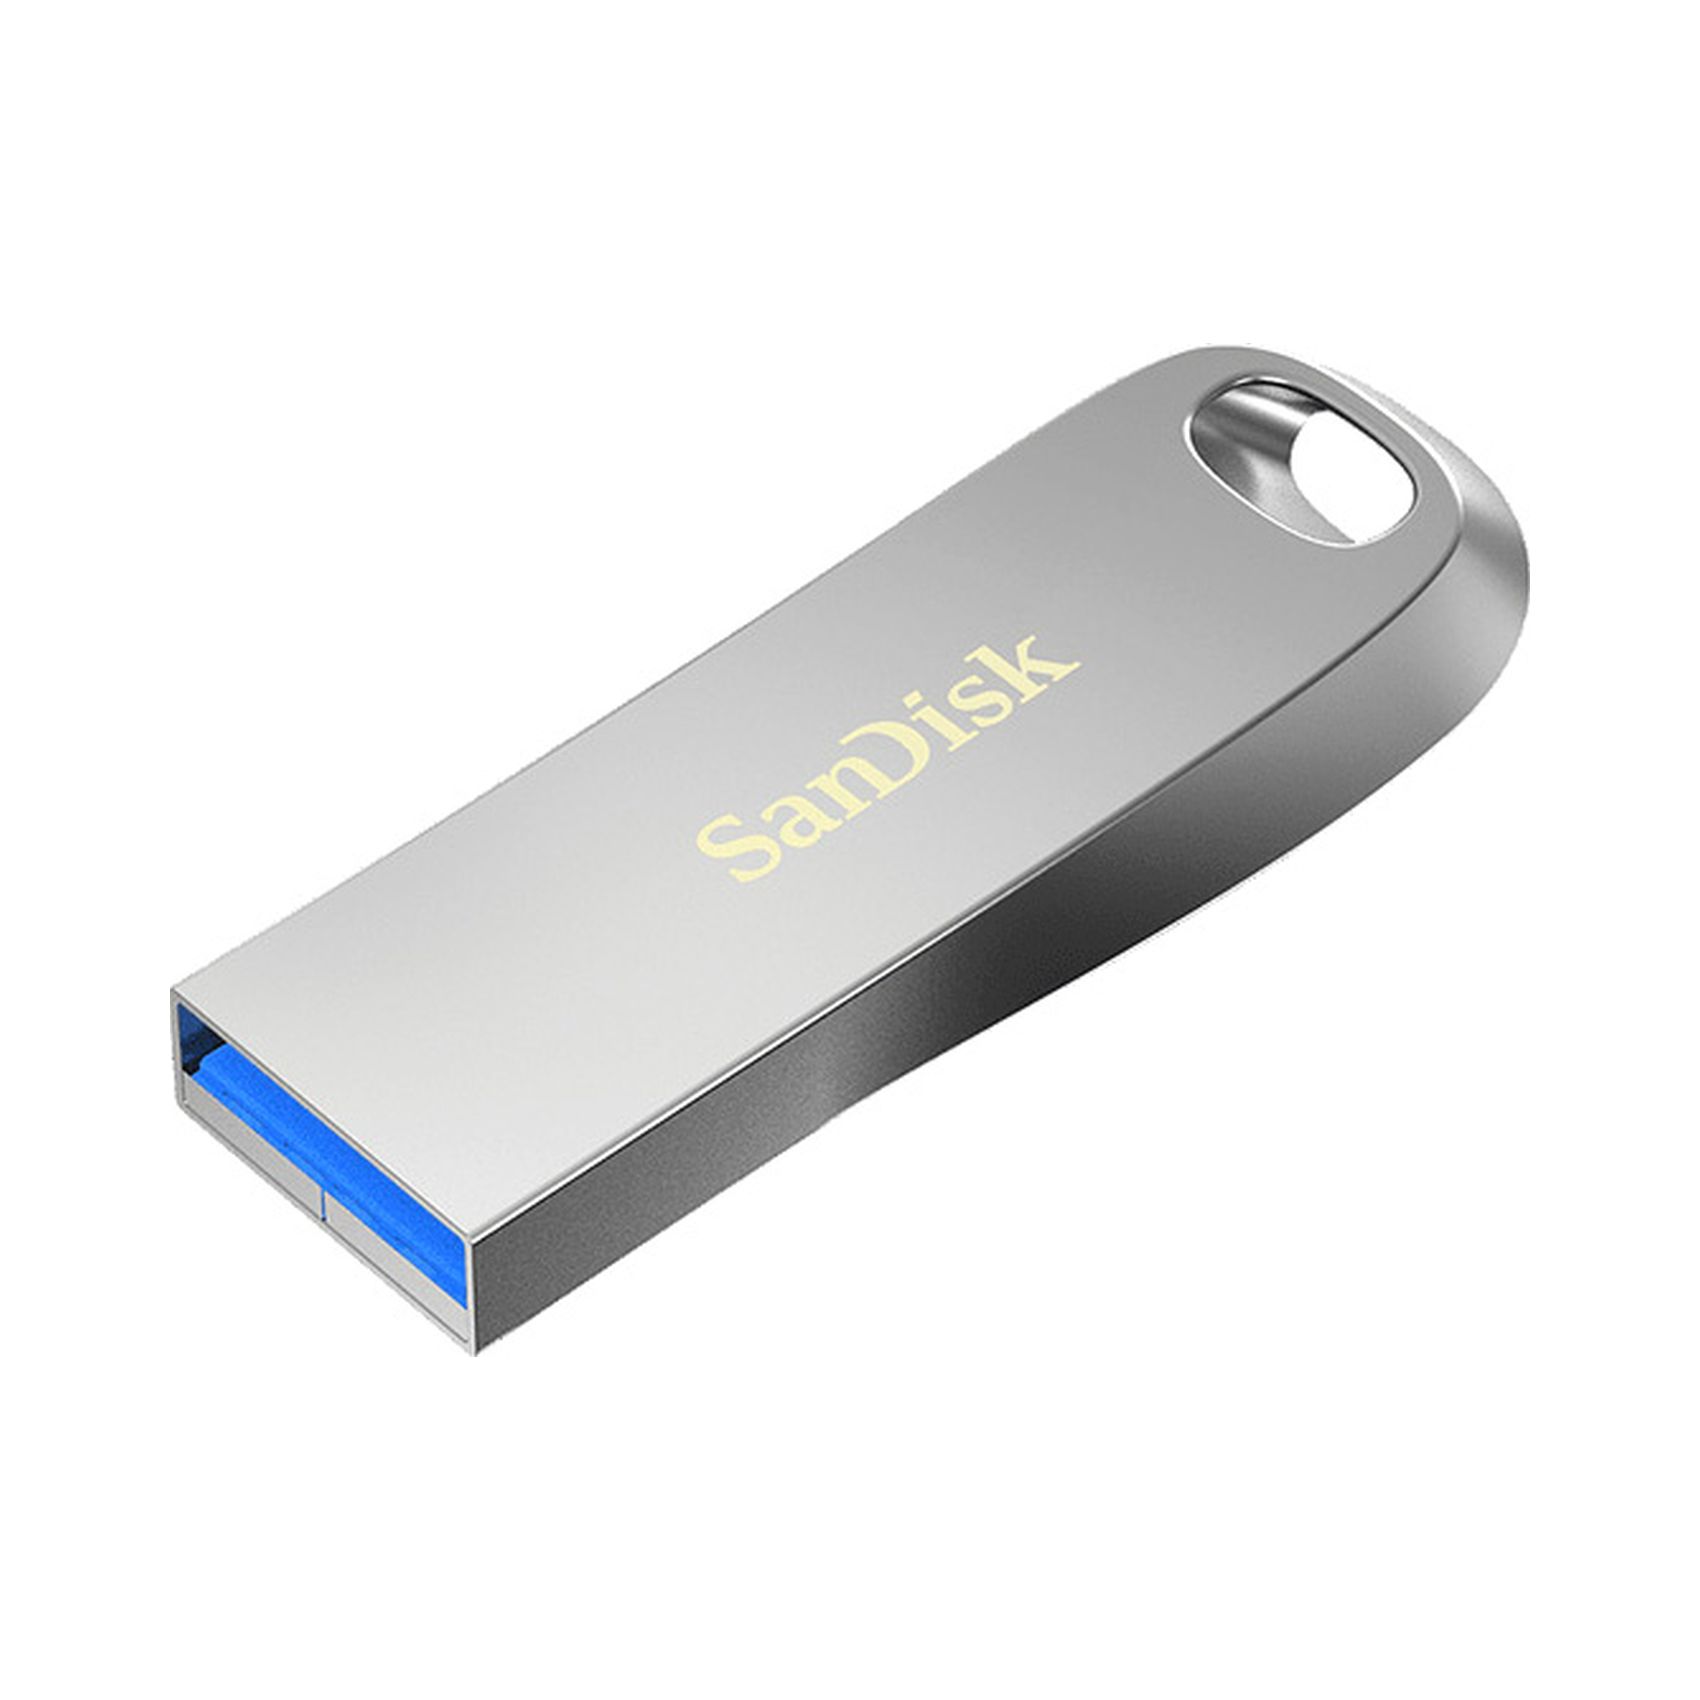 سانديسك الترا لوكس ذاكرة البيانات USB 32 جيغا بايت - فضي